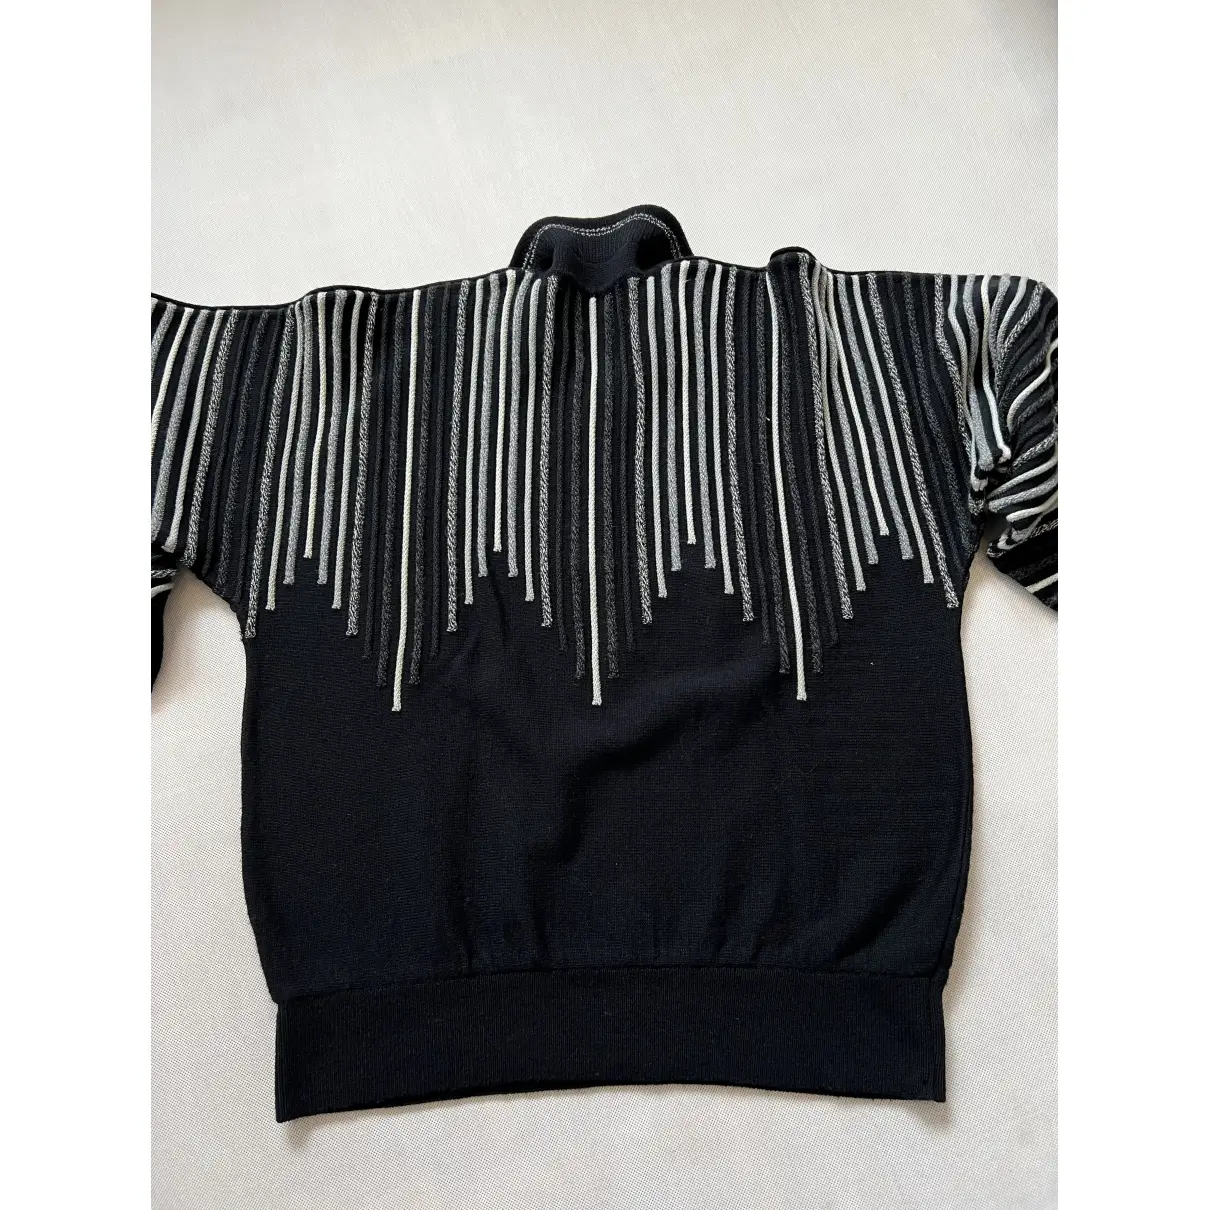 Buy CARLO COLUCCI Sweatshirt online - Vintage